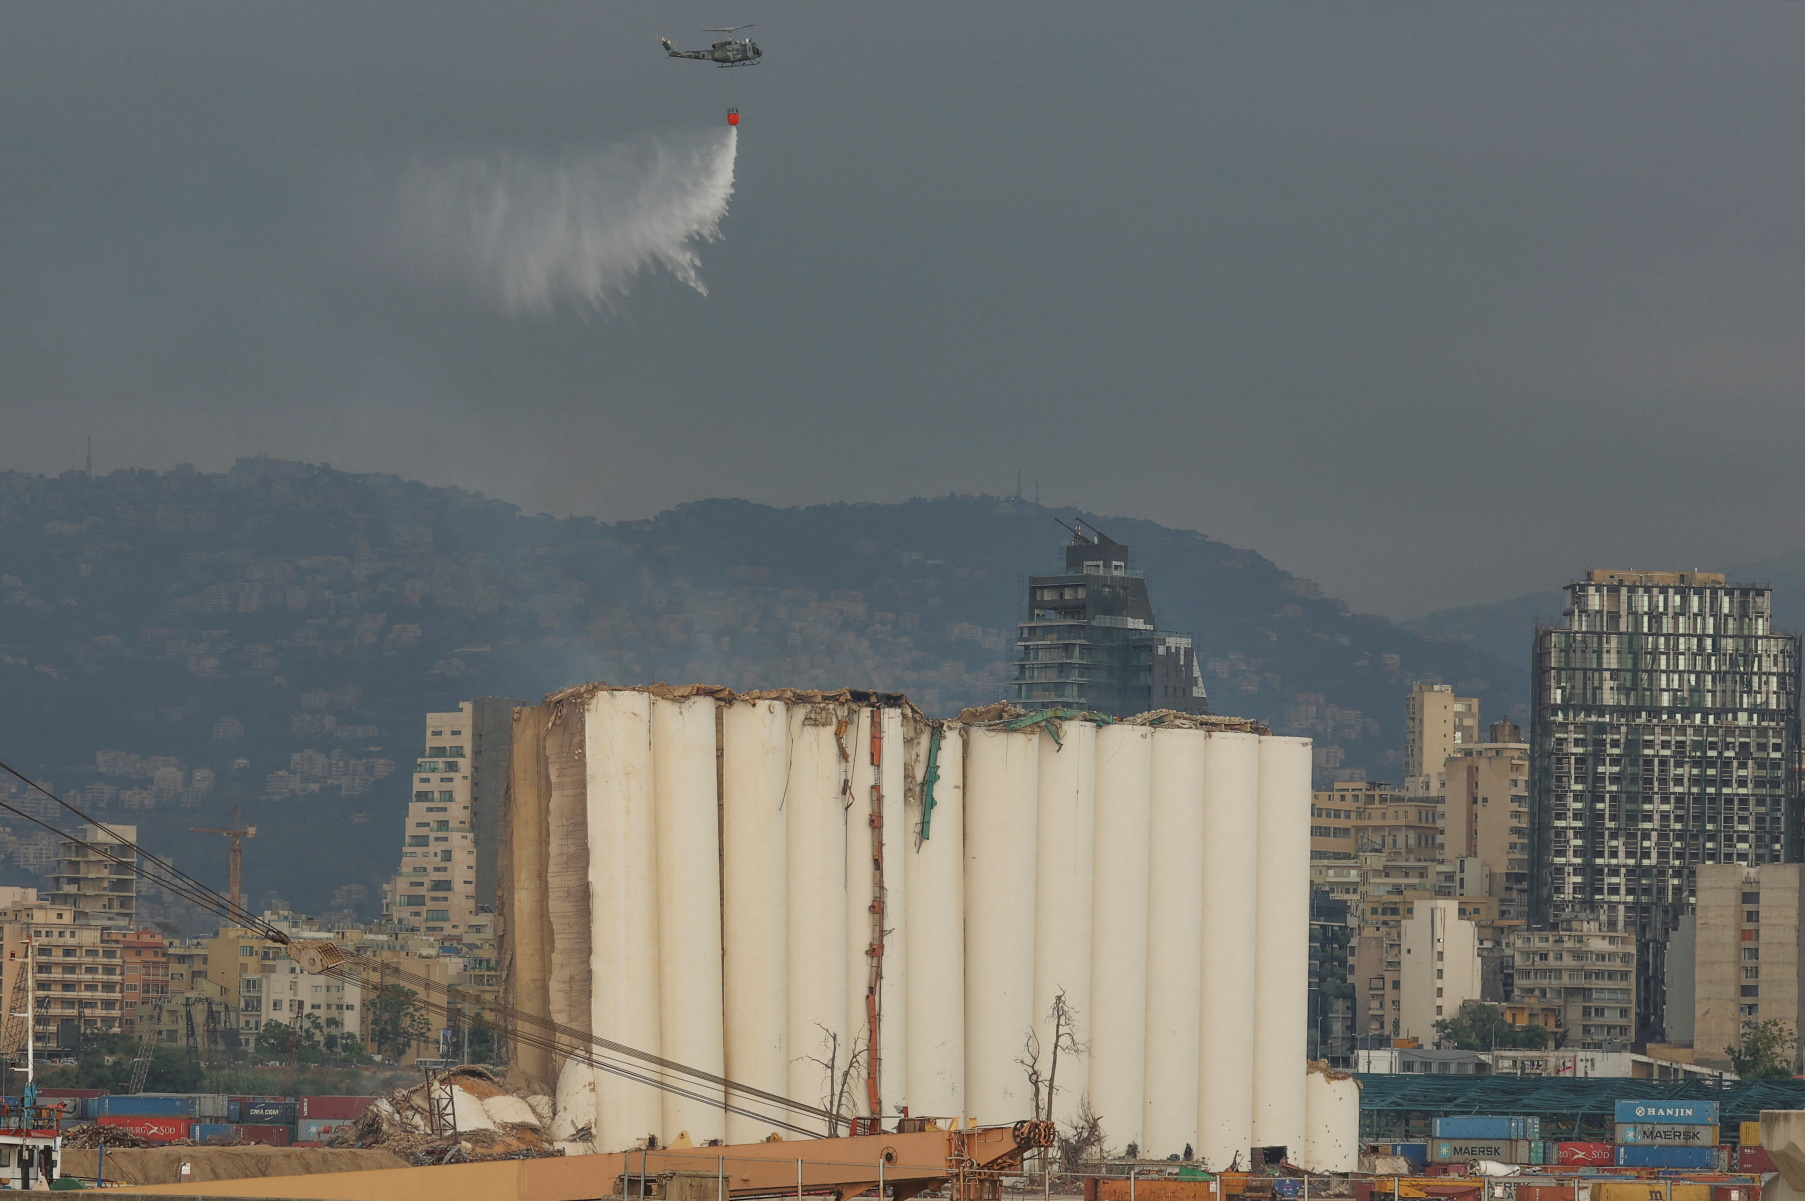 Βηρυτός: Σκόνη και καπνός από κατάρρευση σιλό στο λιμάνι – Μνήμες της έκρηξης με 220 νεκρούς